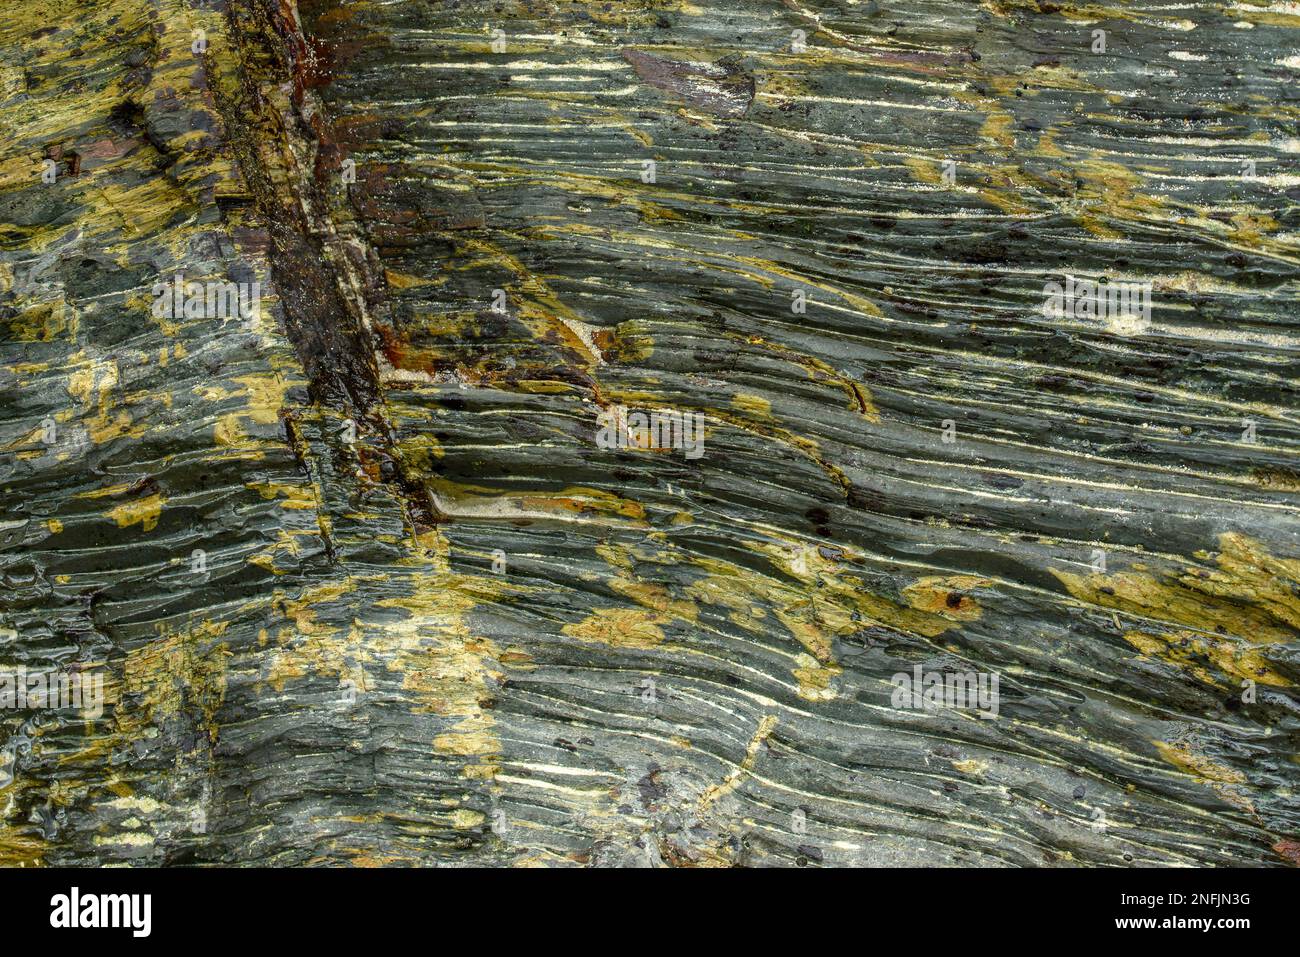 Diese Nahaufnahme von Felsen zeigt die raue, natürliche Schönheit der geologischen Formationen. Die rauen Oberflächen und Strukturen der Felsen sind Promi Stockfoto